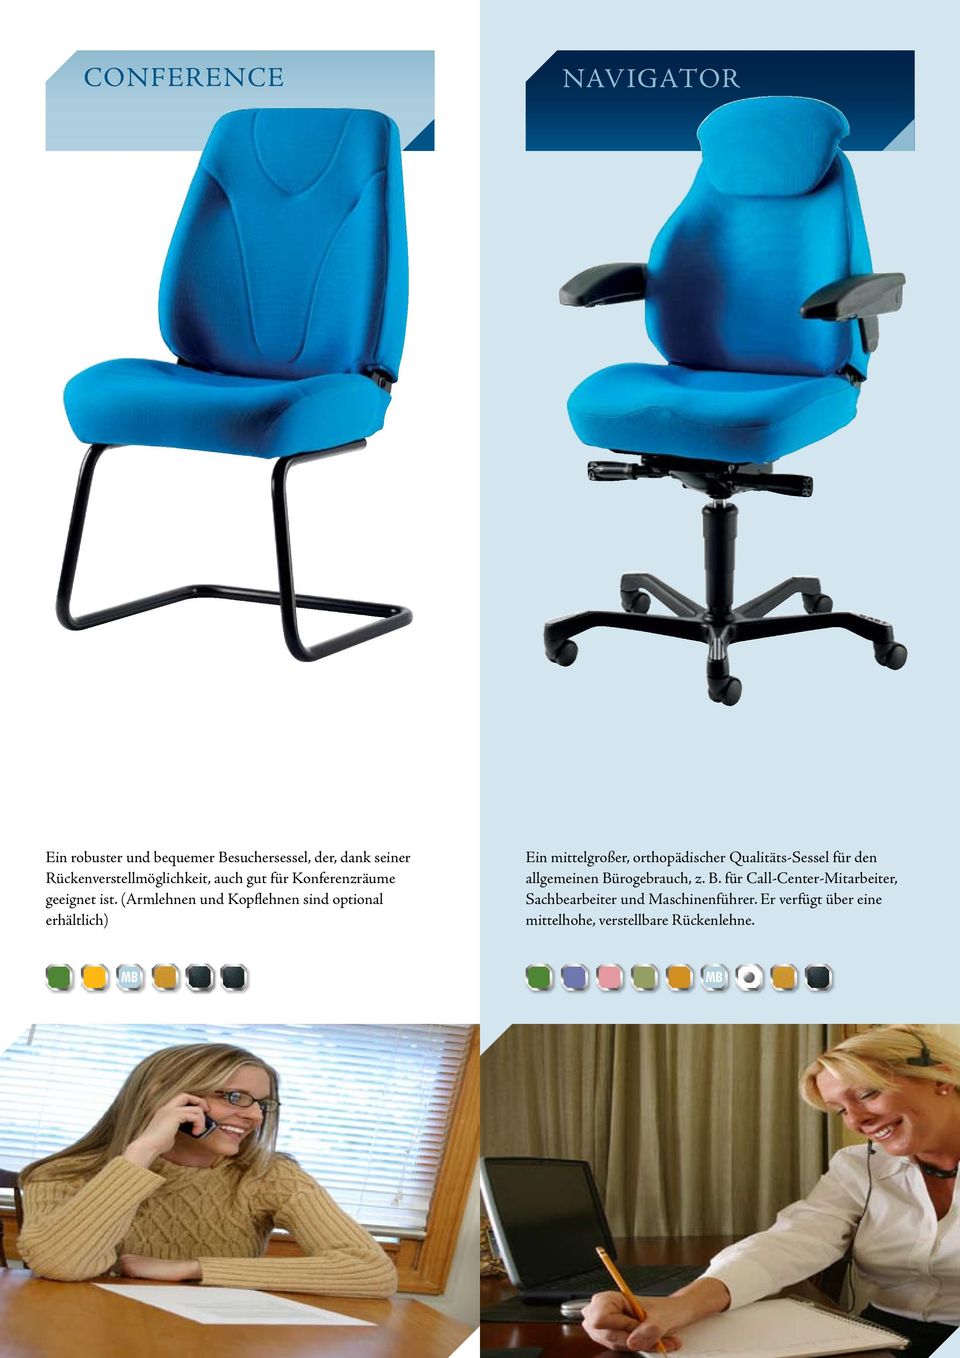 (Armlehnen und Kopflehnen sind optional erhältlich) Ein mittelgroßer, orthopädischer Qualitäts-Sessel